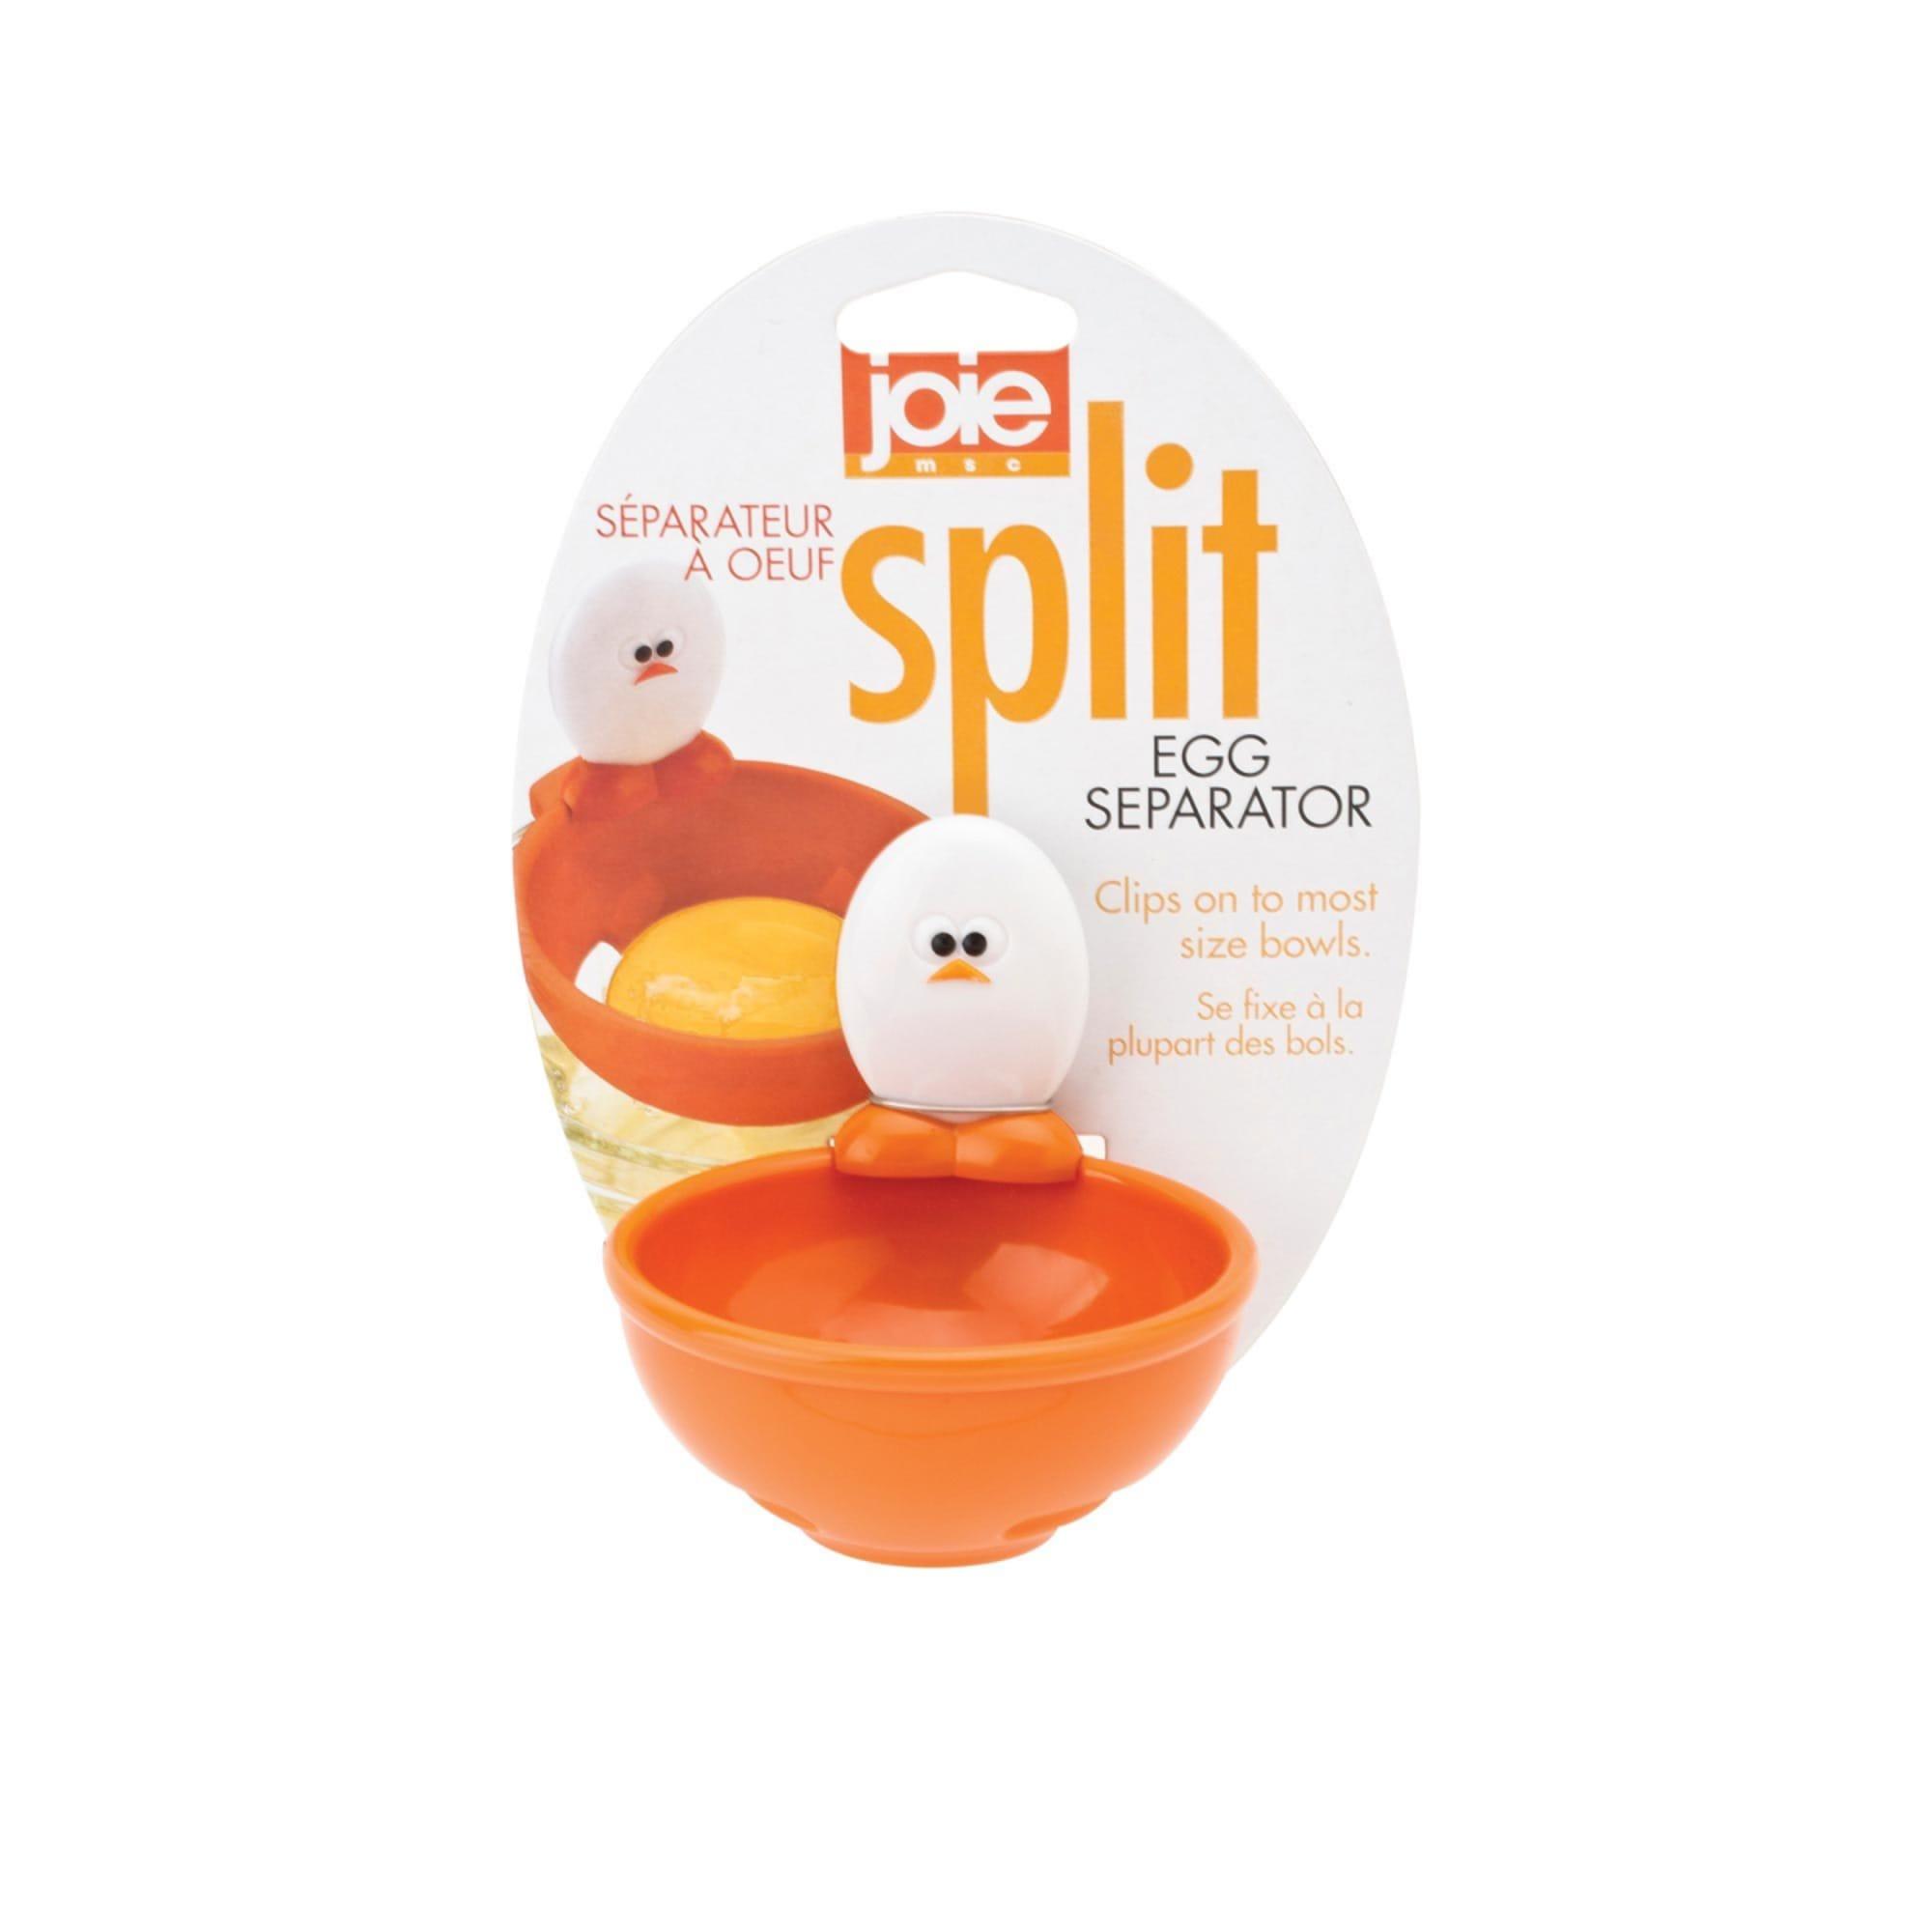 Joie Eggy Egg Separator Image 1